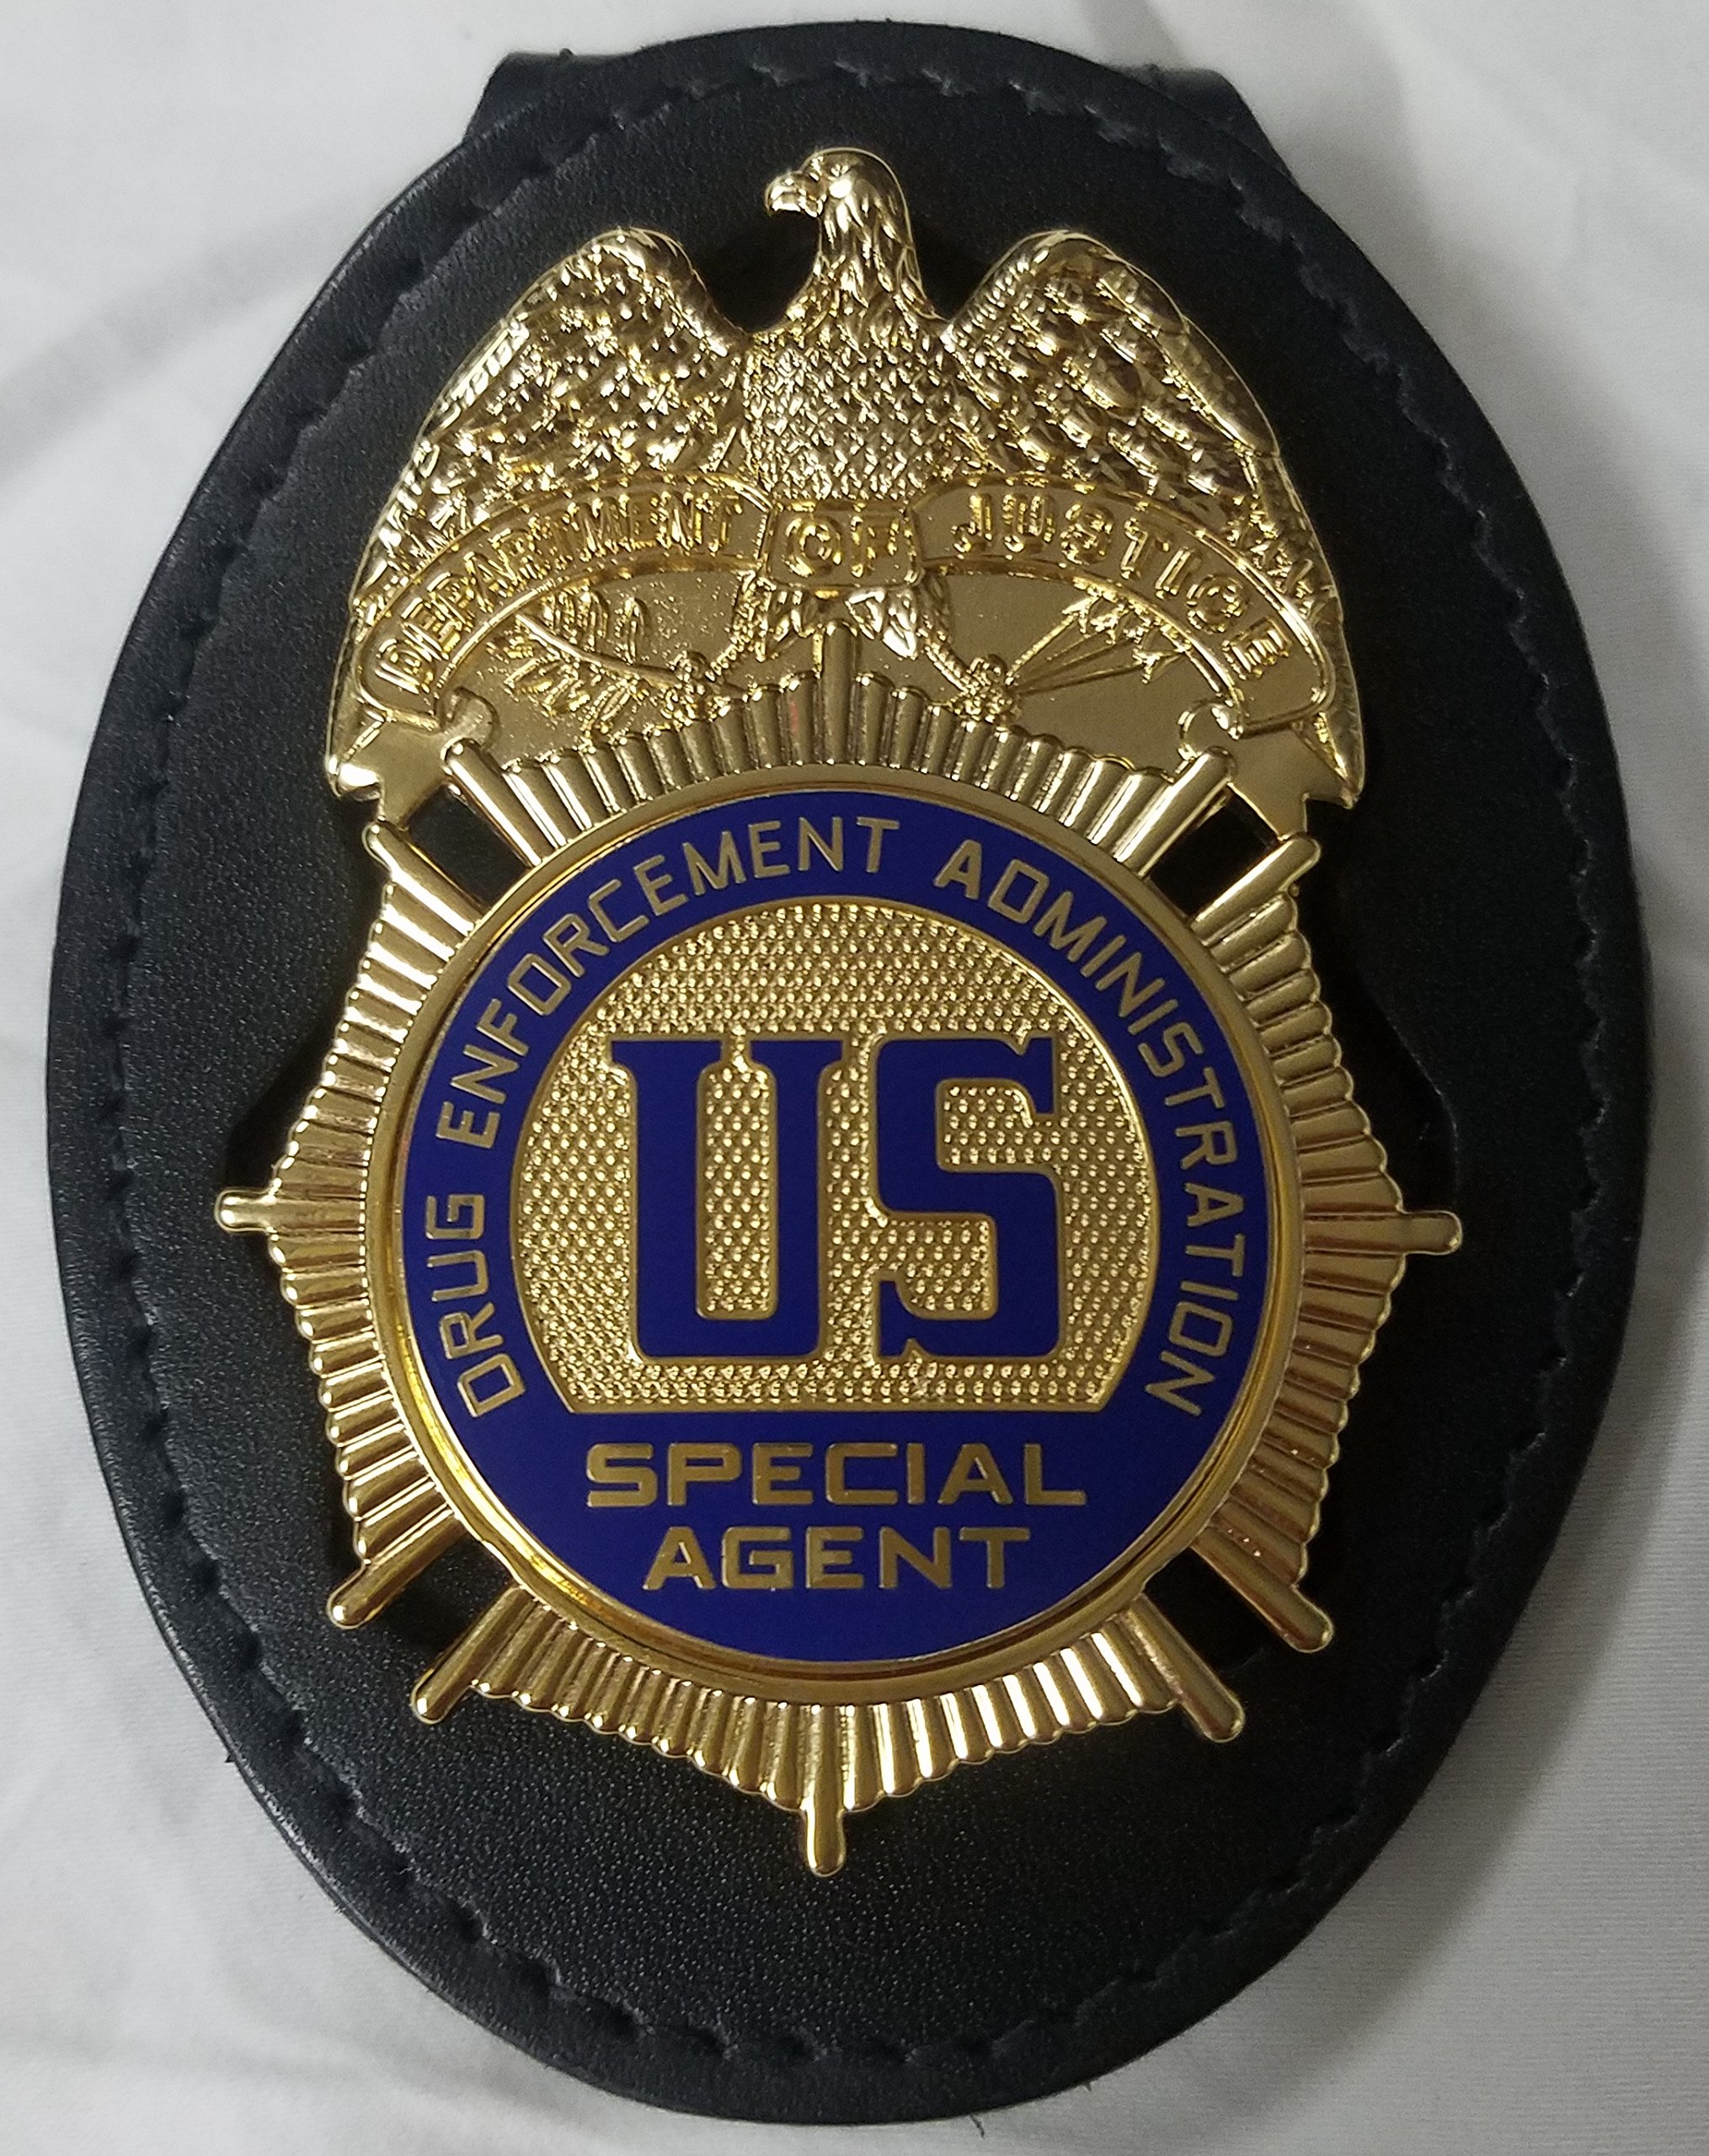 Registered agent badge or stamp.